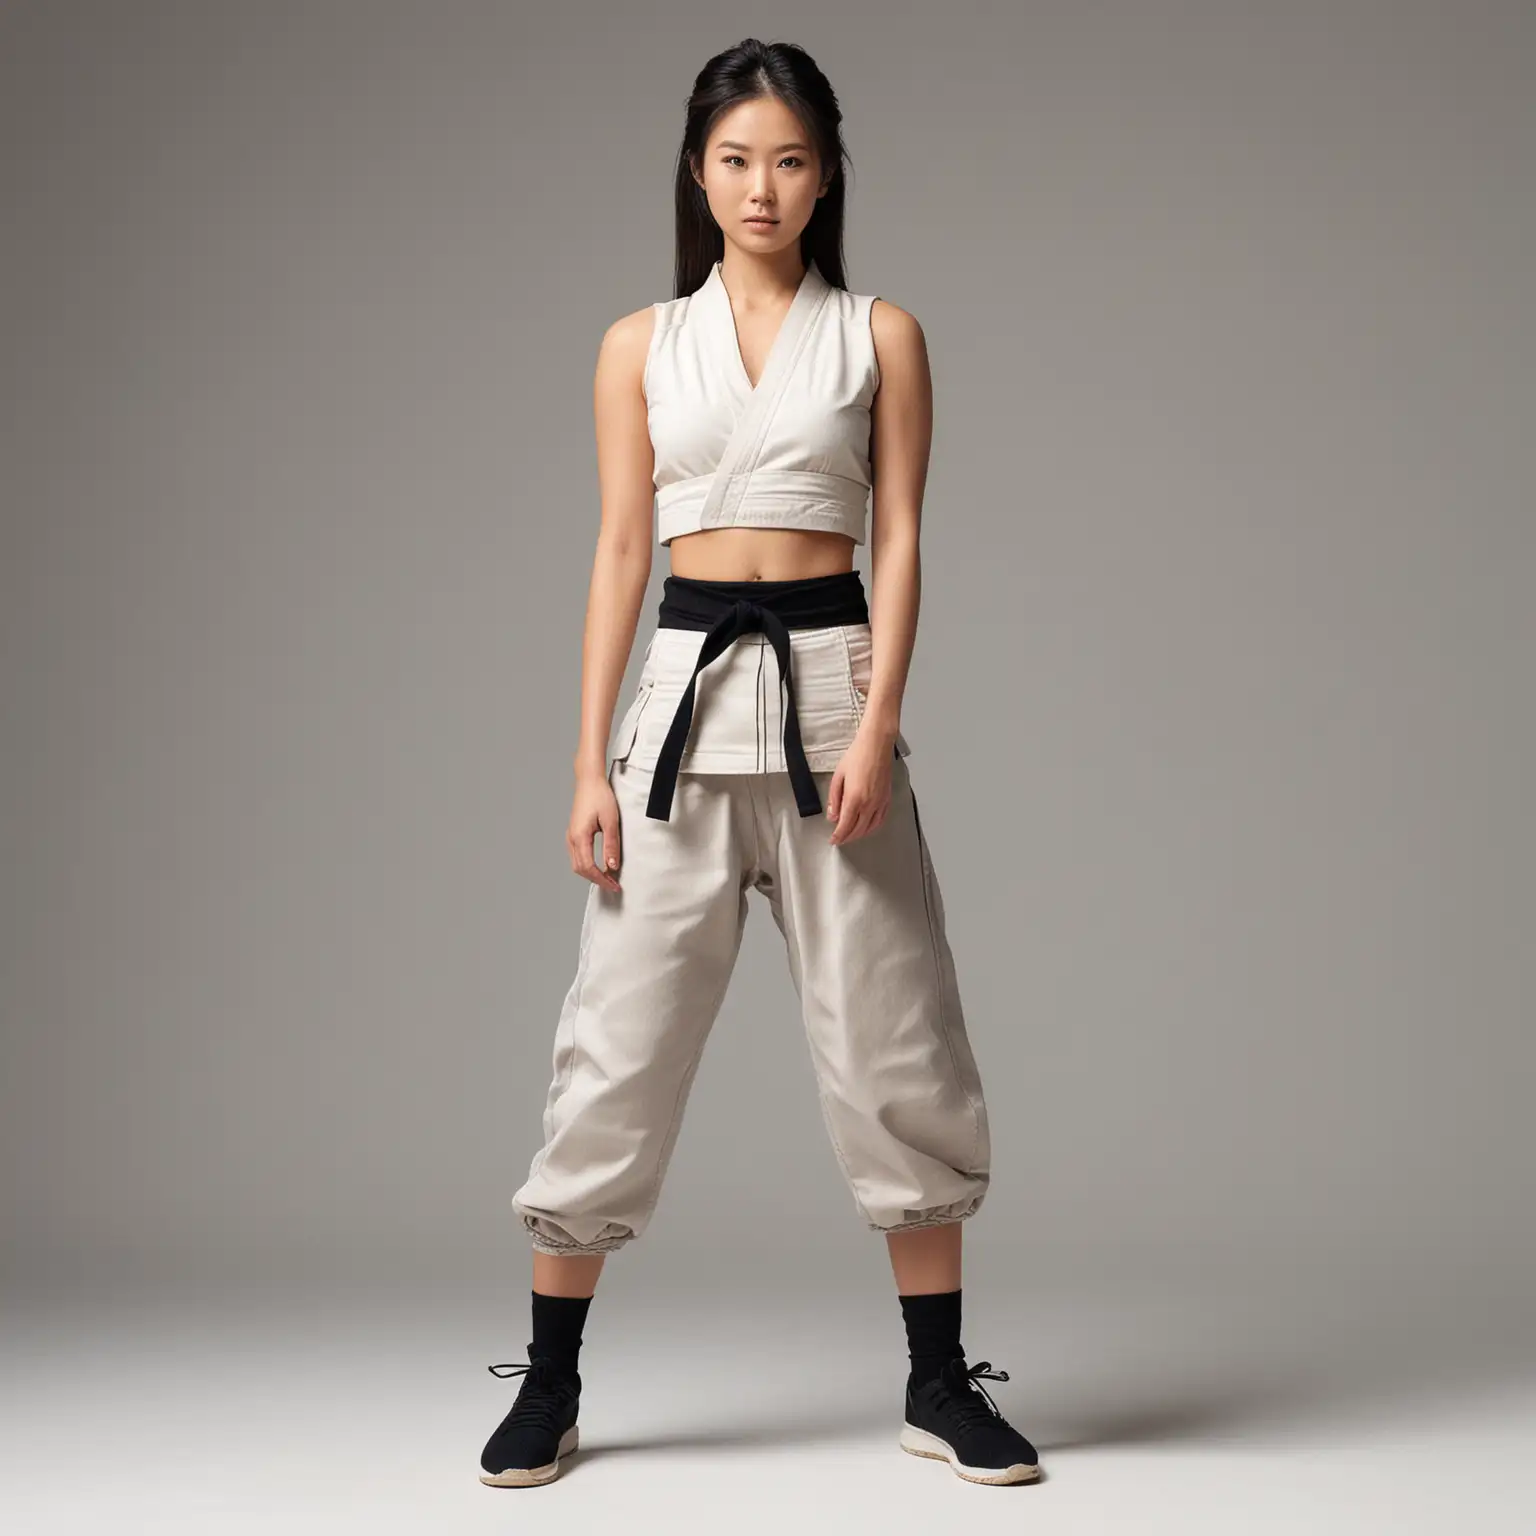 Japanese Supermodel in Sleeveless Karate Gi and Leggings on White Background